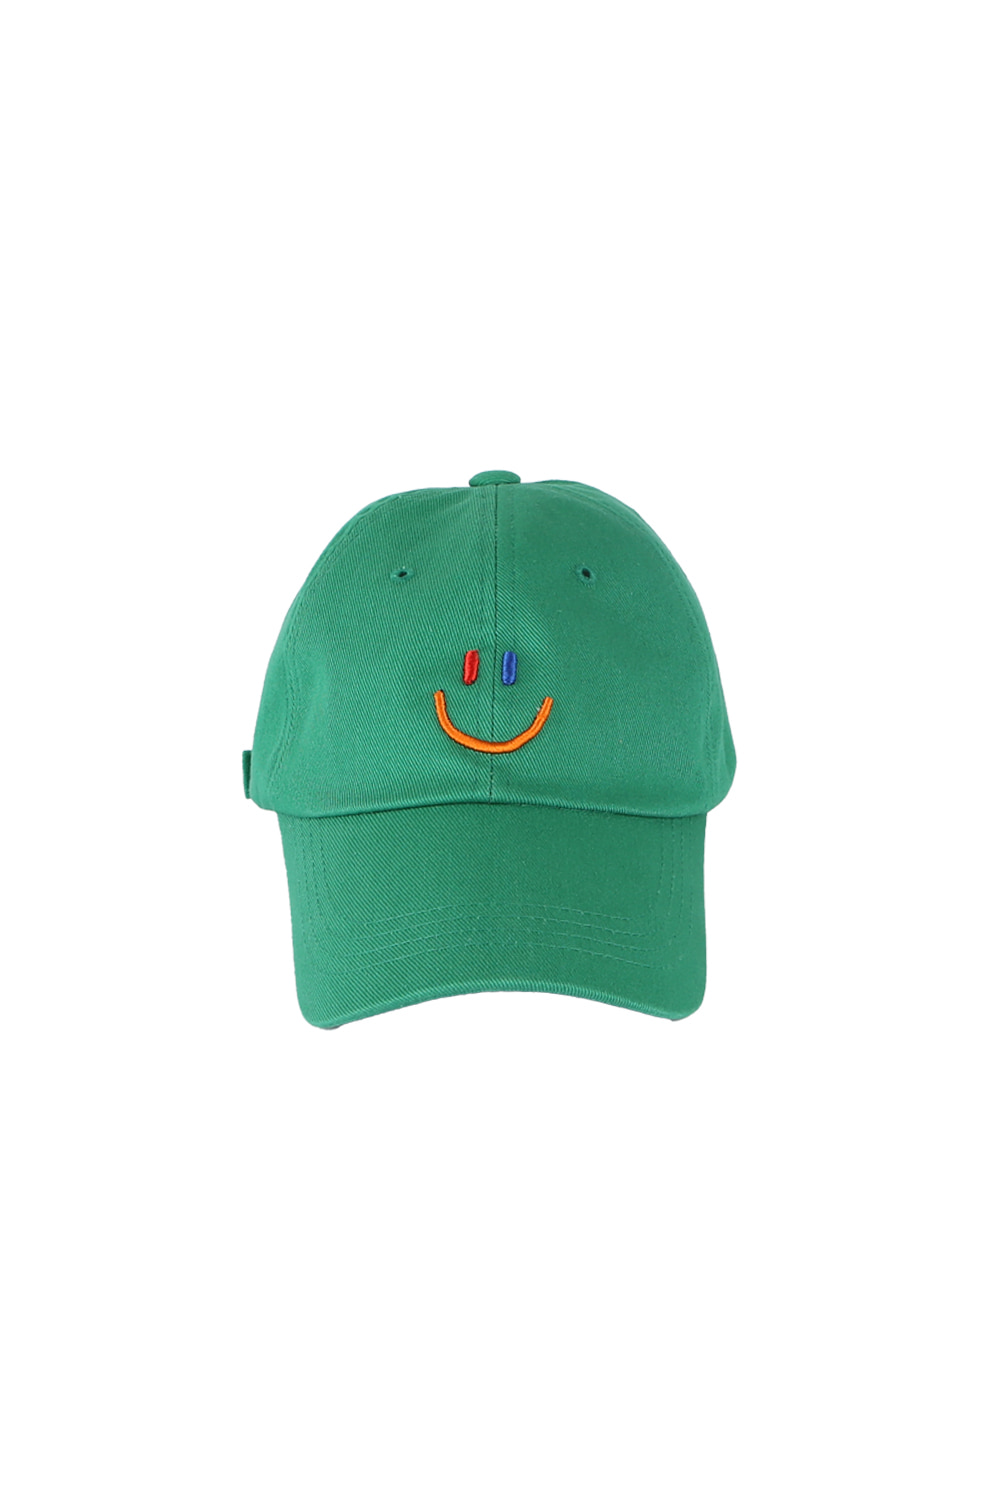 LaLa Smile Ball Cap [Green]